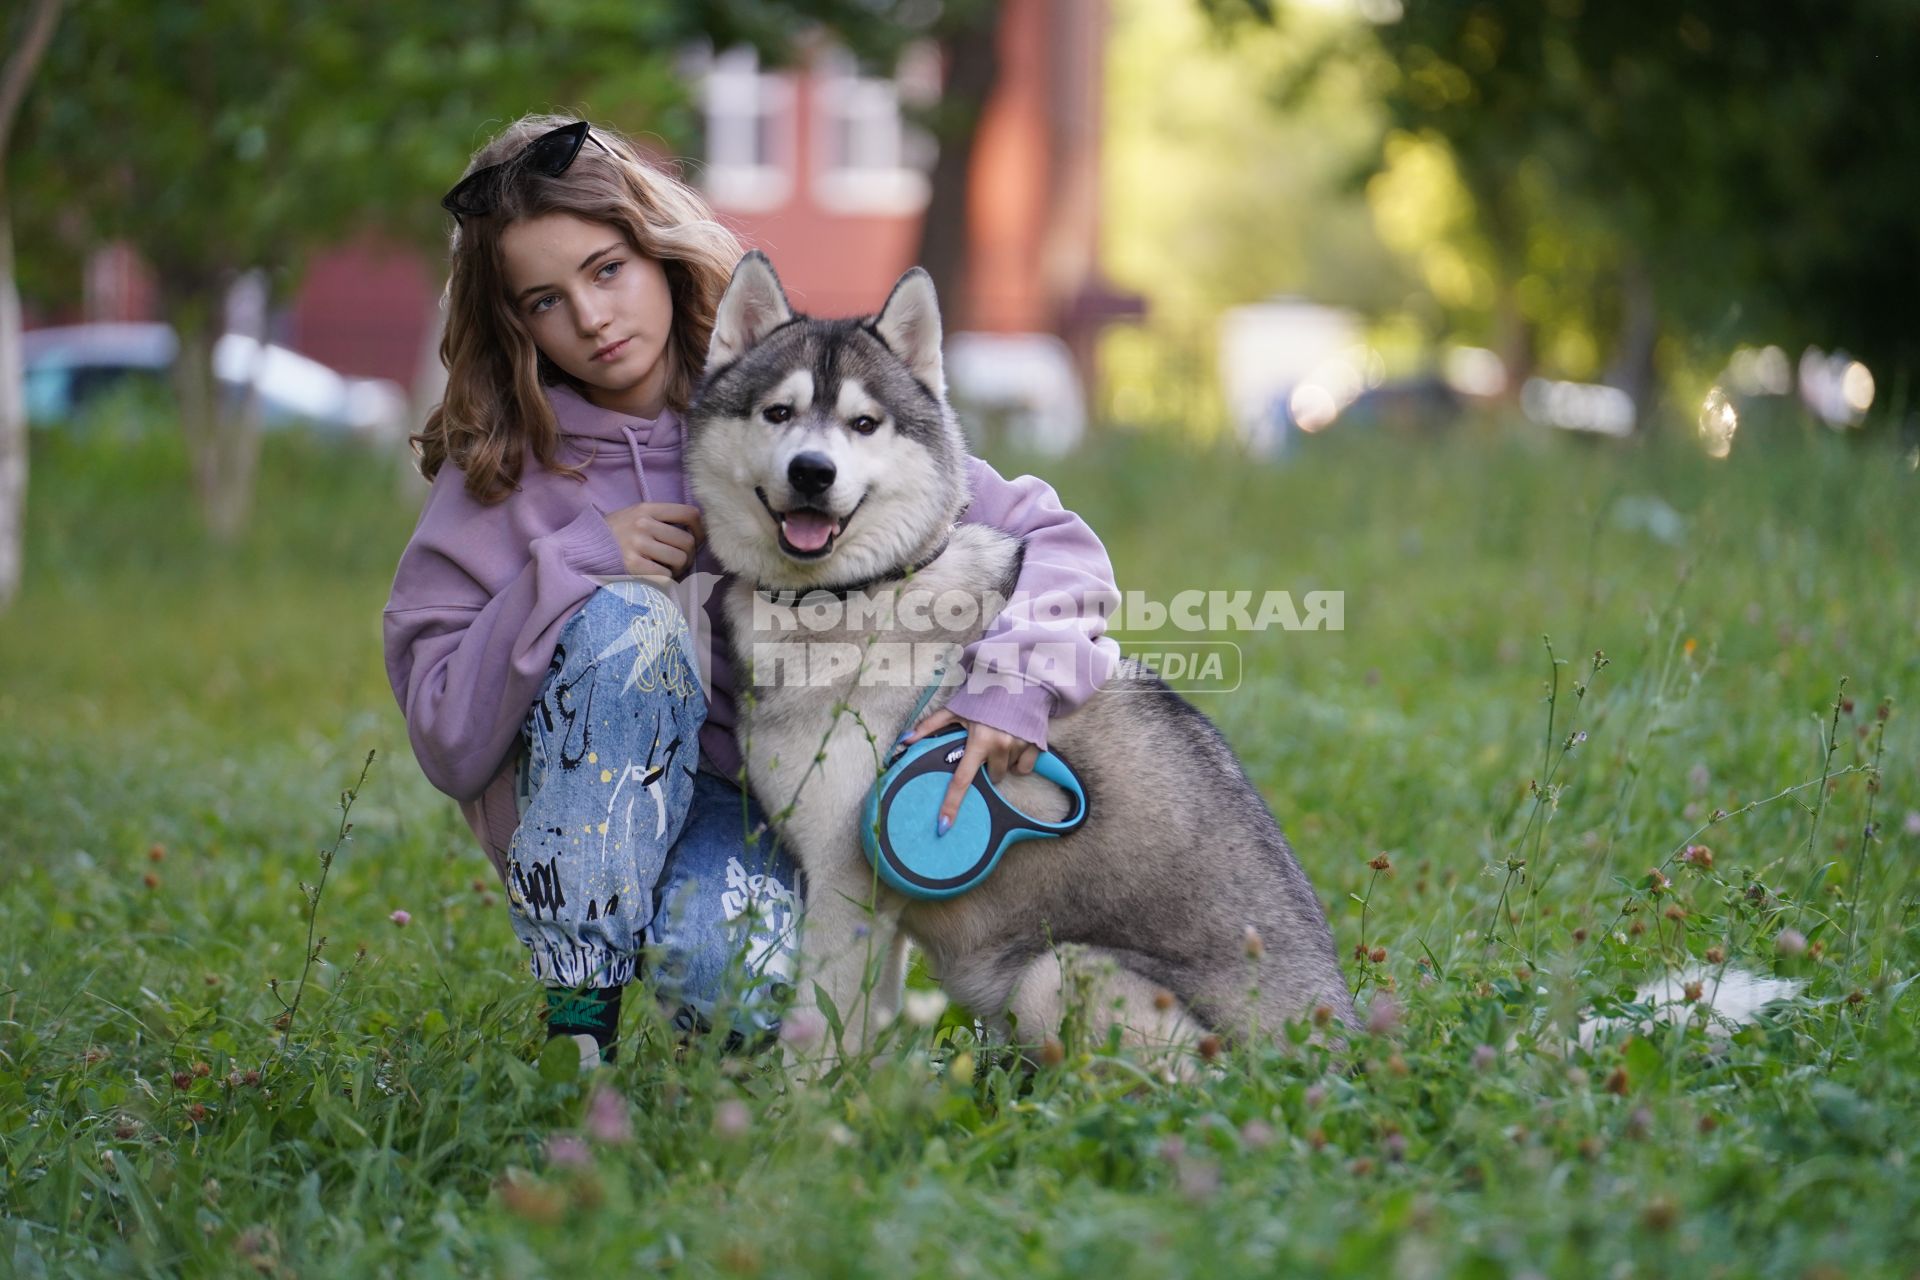 Самара. Девушка с собакой породы маламут на прогулке.